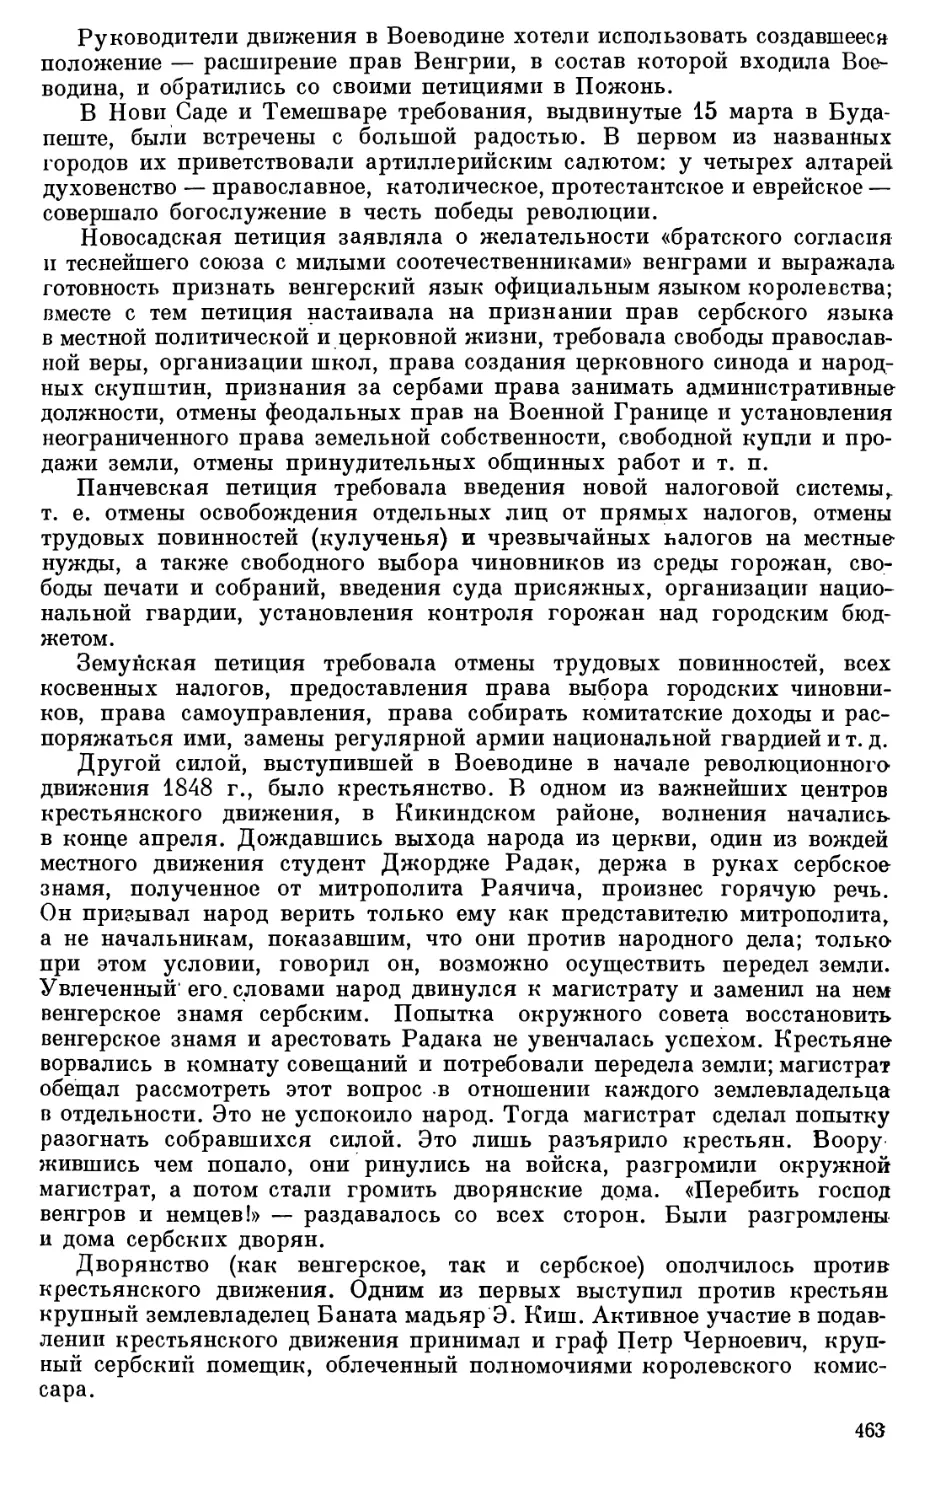 Итоги движения сербов Воеводины в 1848 г.